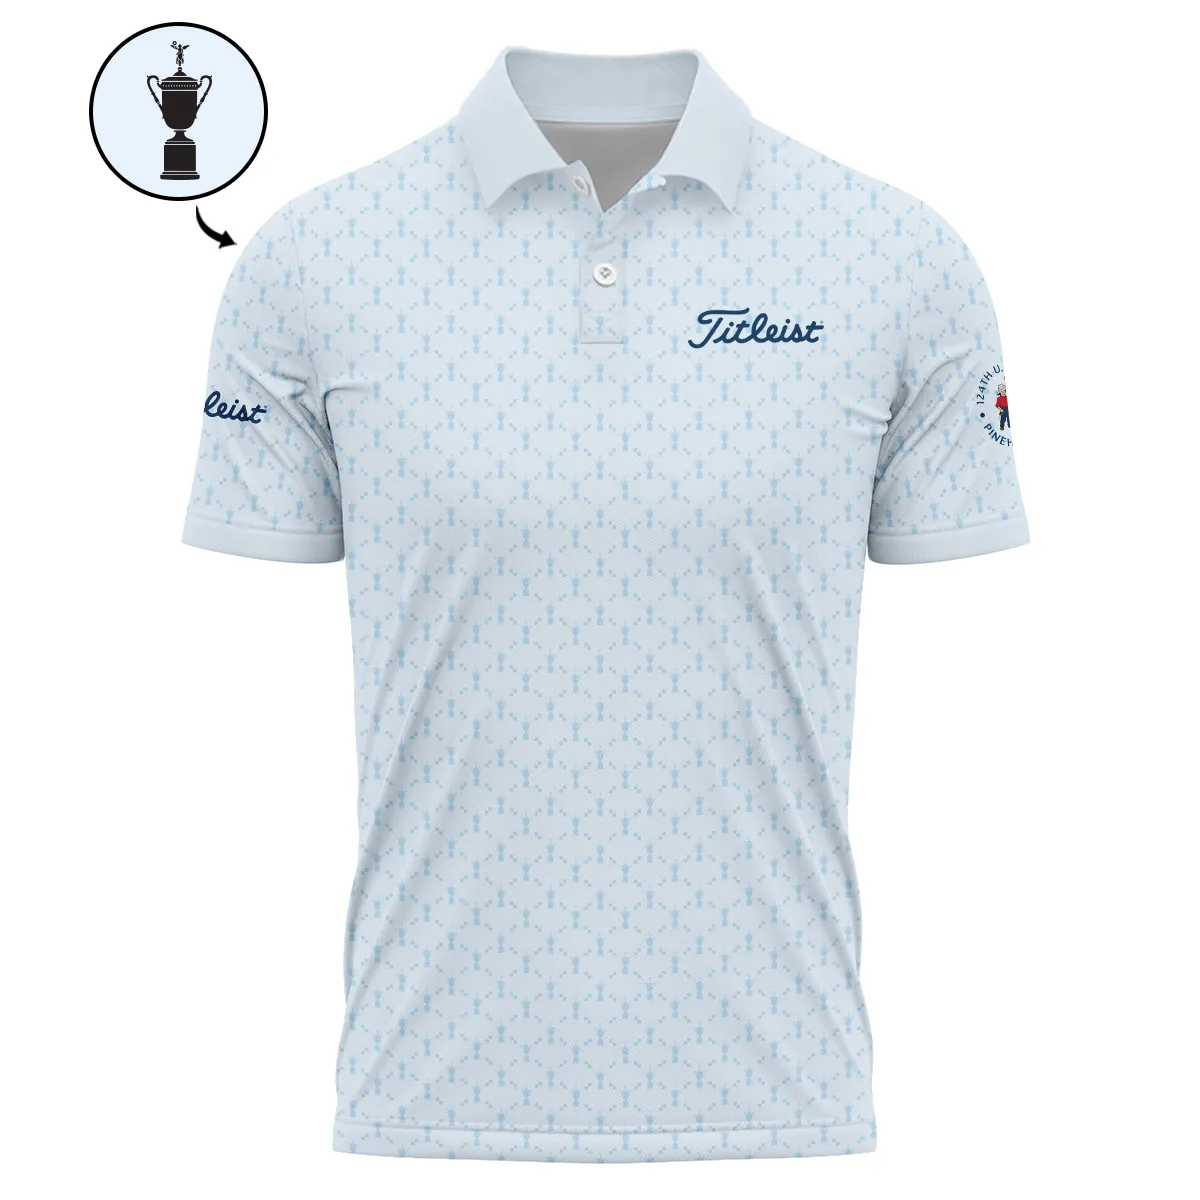 Golf Sport Pattern Blue Sport Uniform 124th U.S. Open Pinehurst Titleist Zipper Hoodie Shirt Style Classic